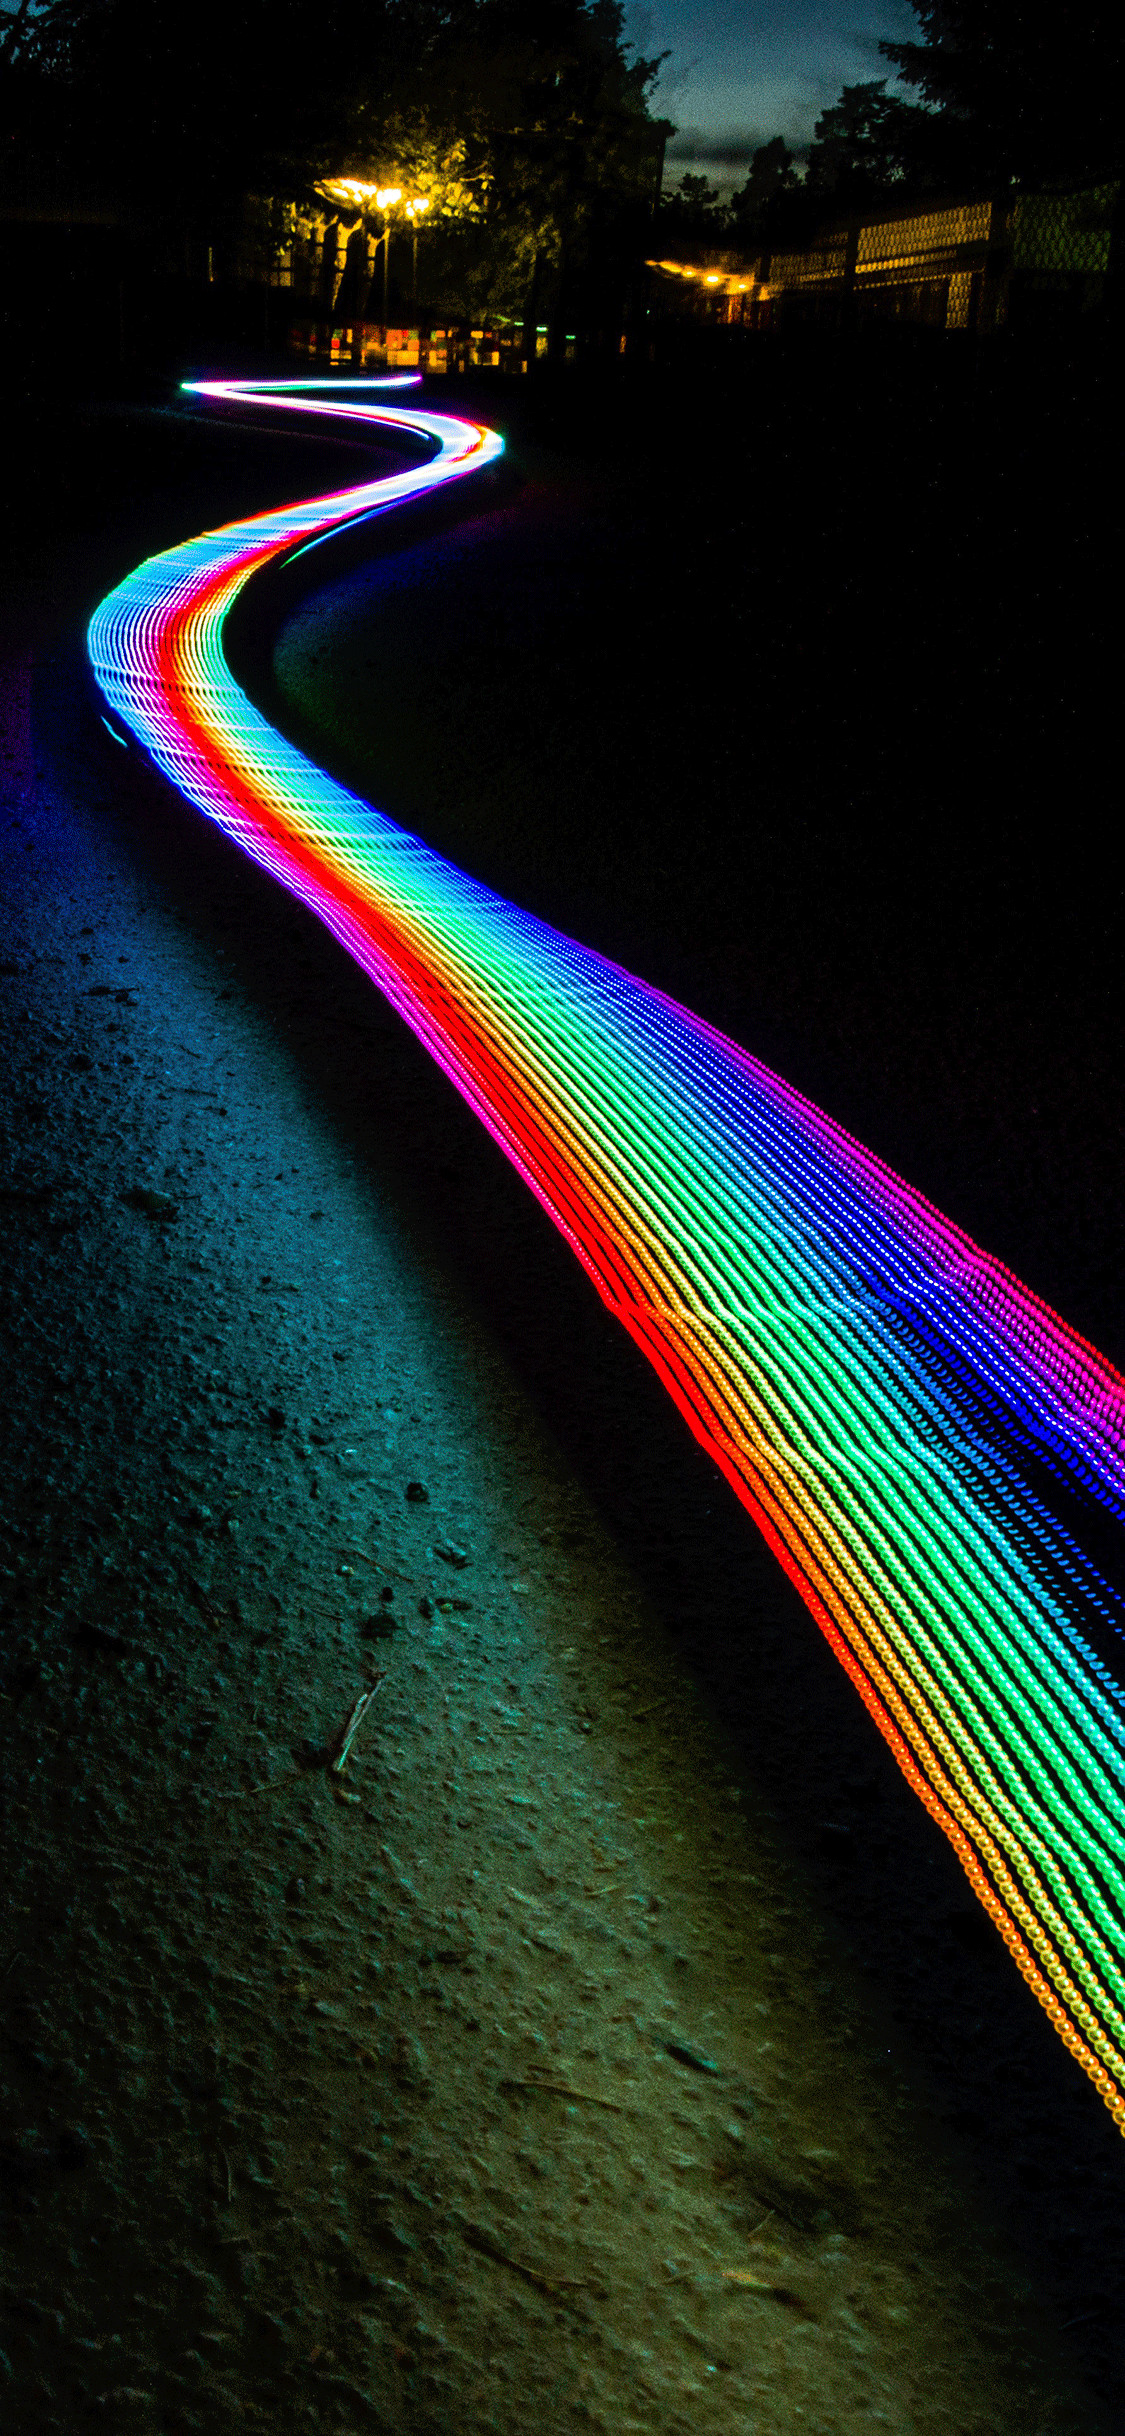 1125x2436 iPhone wallpaper neon lights Neon lights